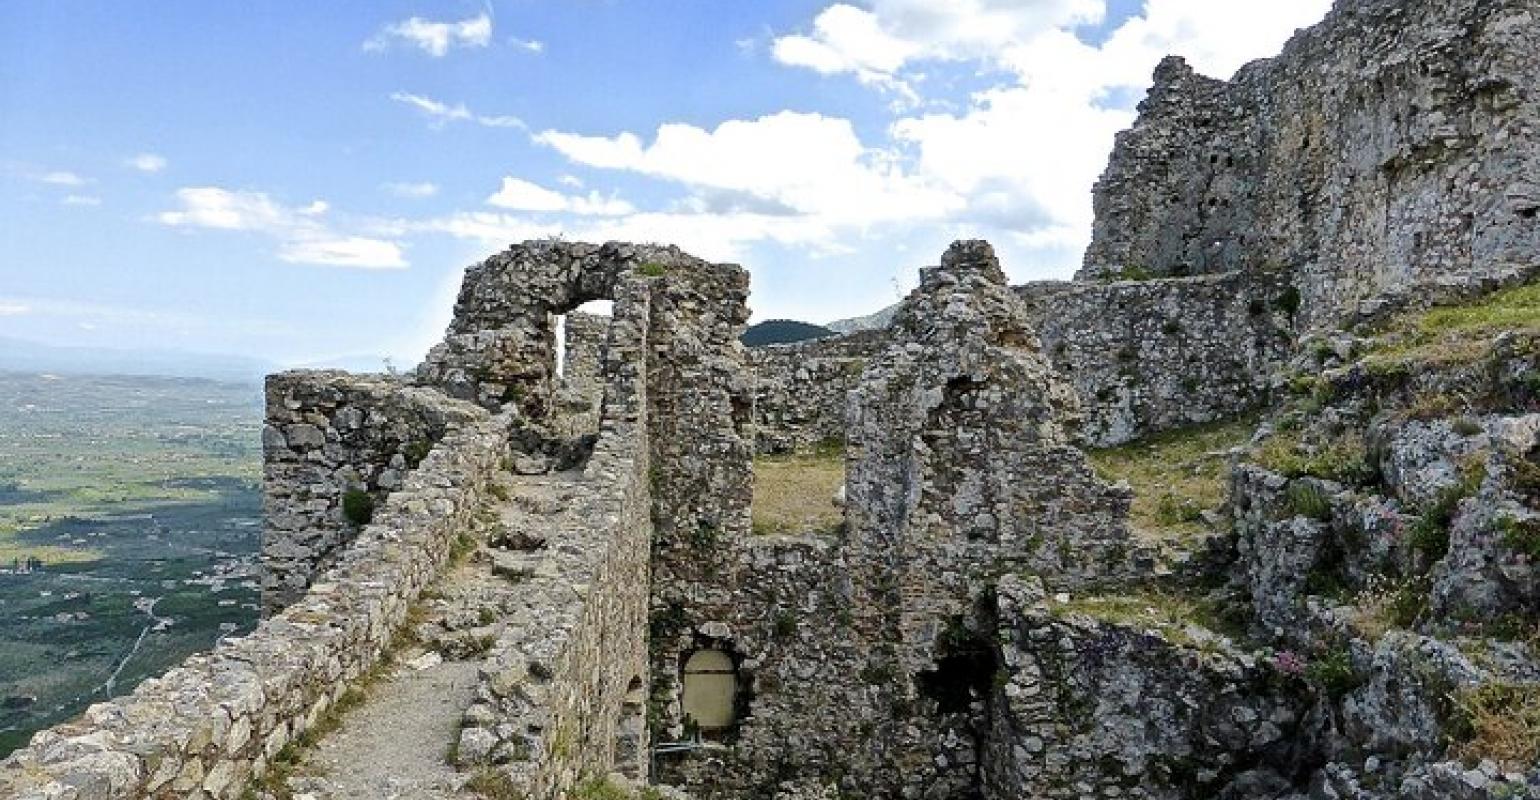 The Byzantine Castle of Mystras